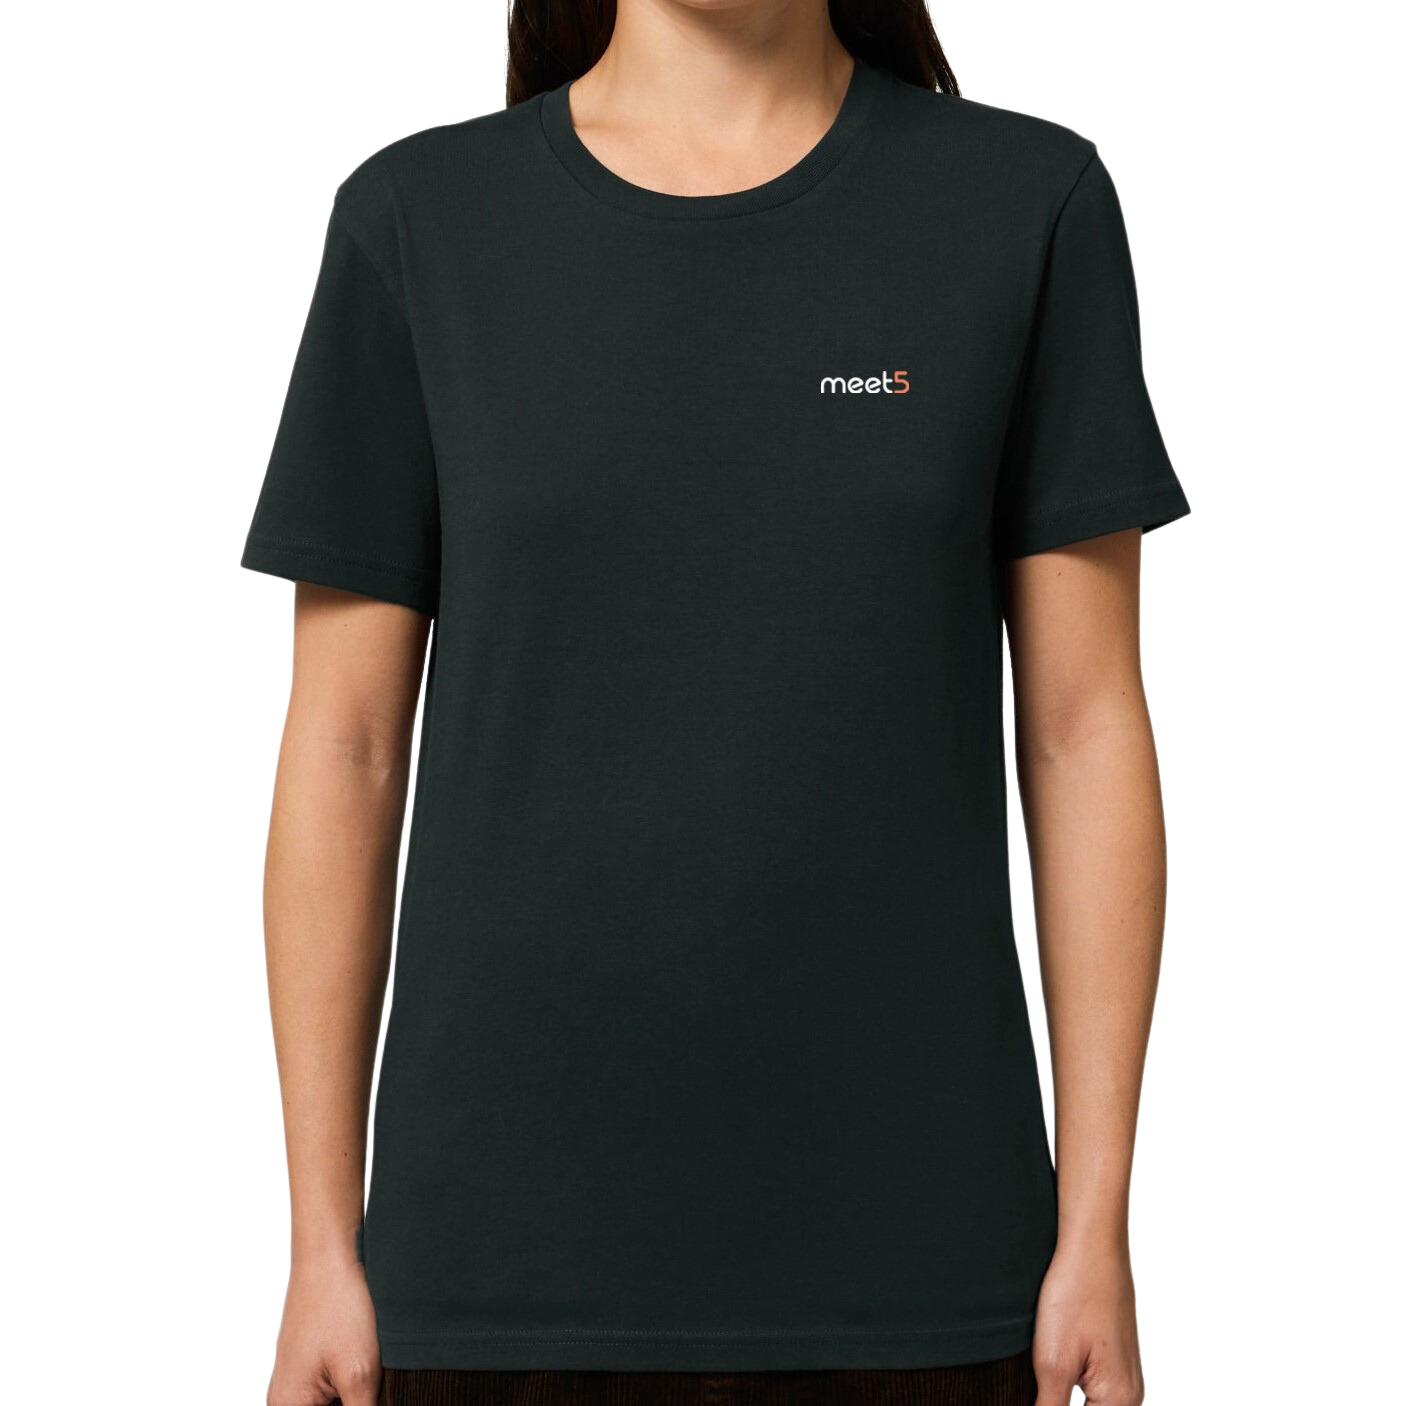 Meet5 T-Shirt in Schwarz, einfarbig mit gestickten Meet5 Logo auf der linken Brust.